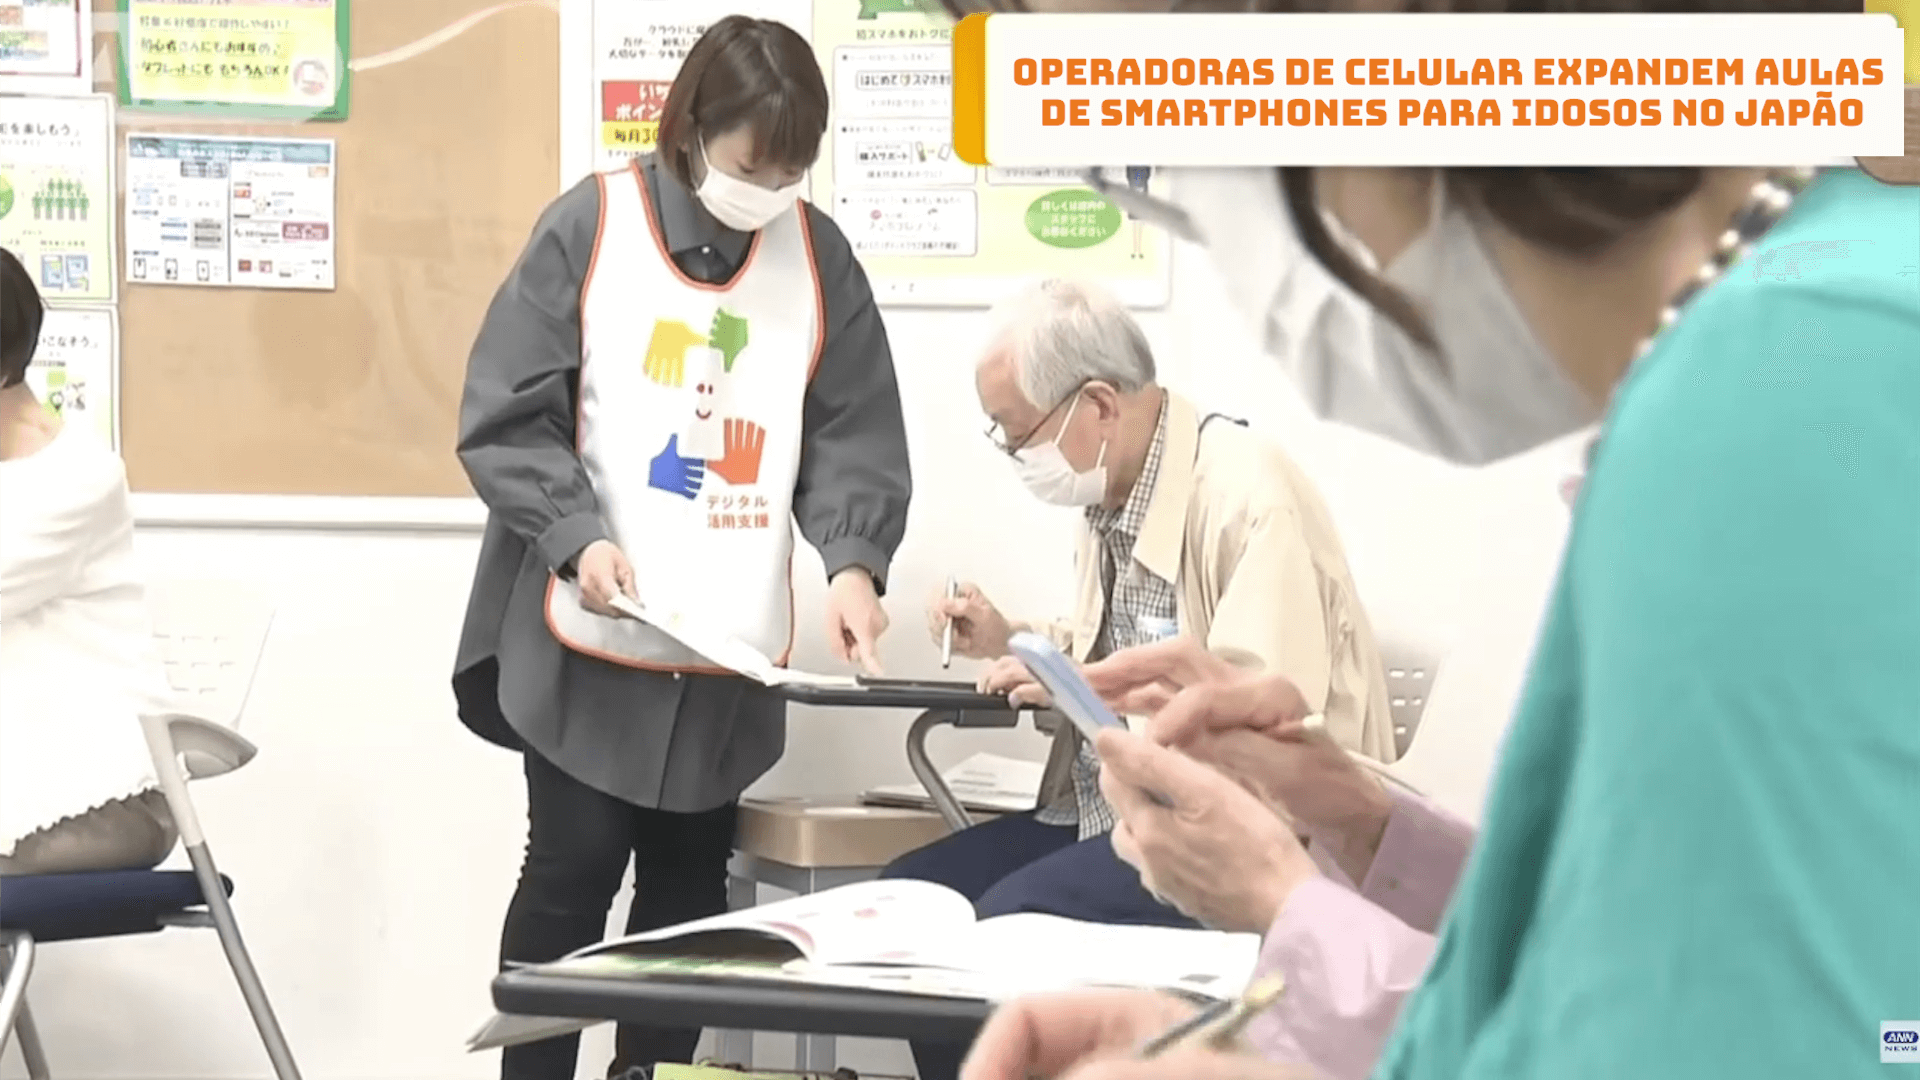 Operadoras de celular expandem aulas de smartphones para idosos no Japão 